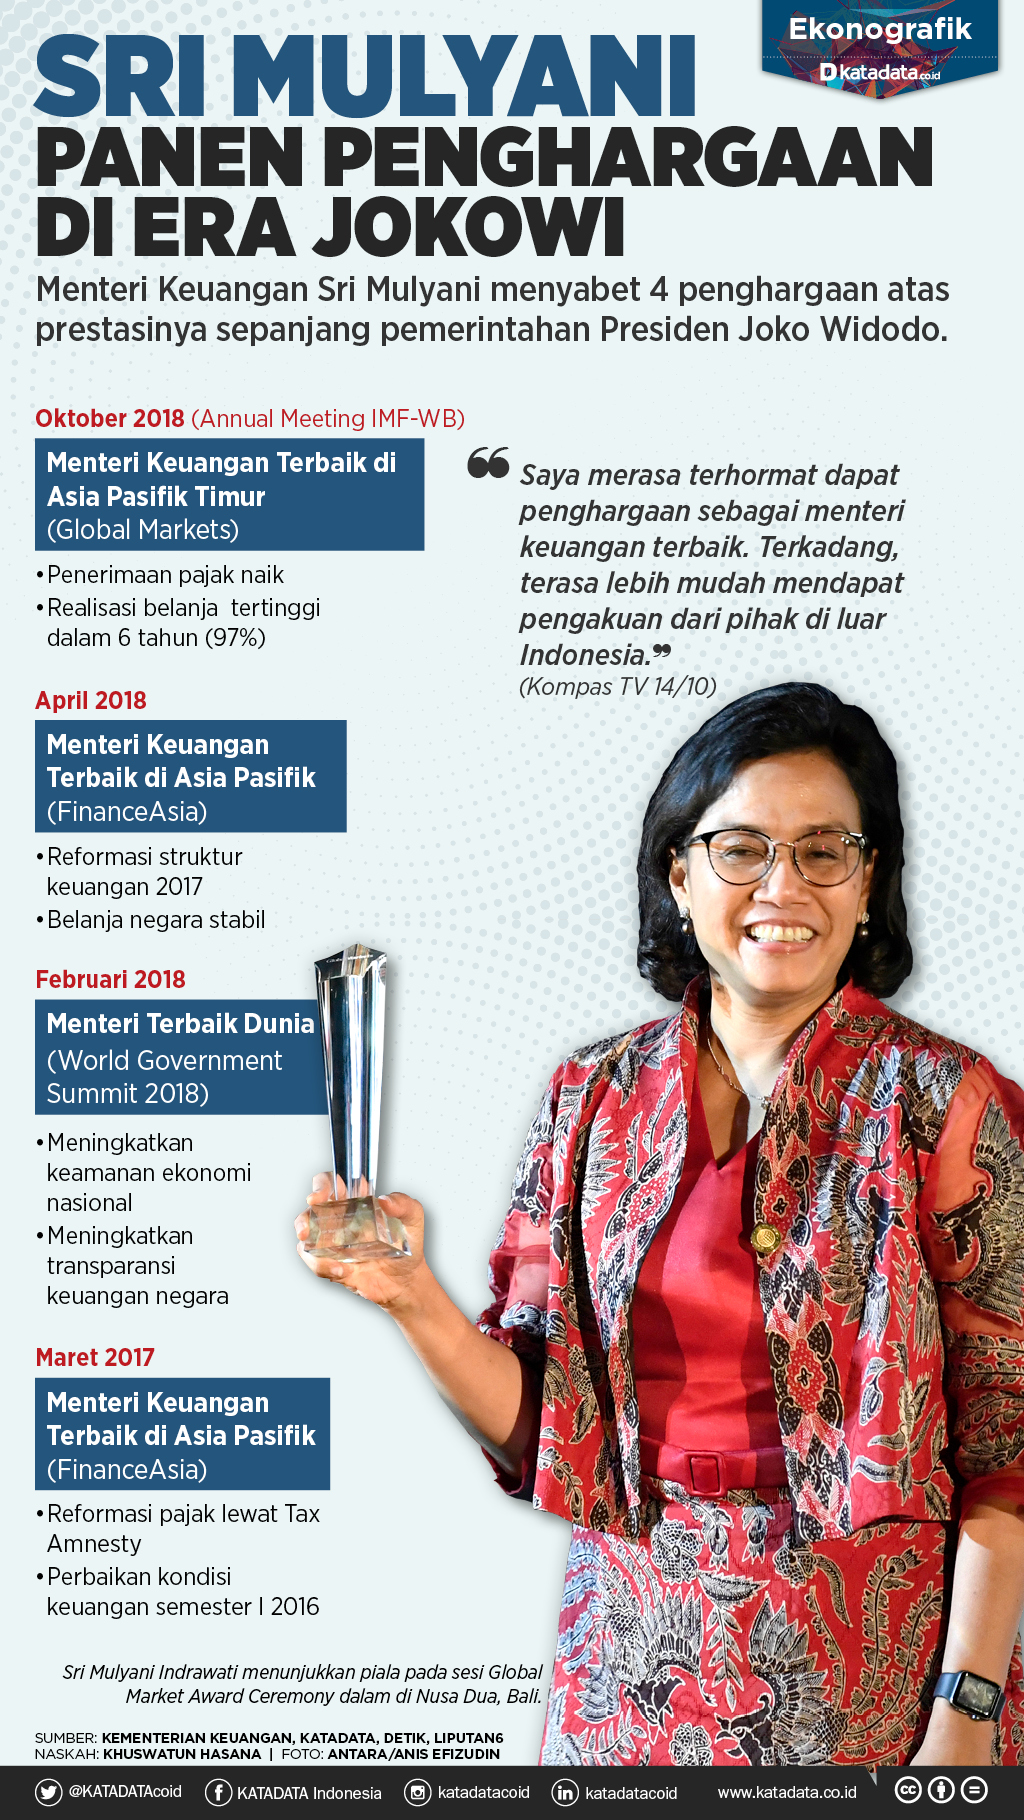 Sri Mulyani Panen Penghargaan di Era Jokowi